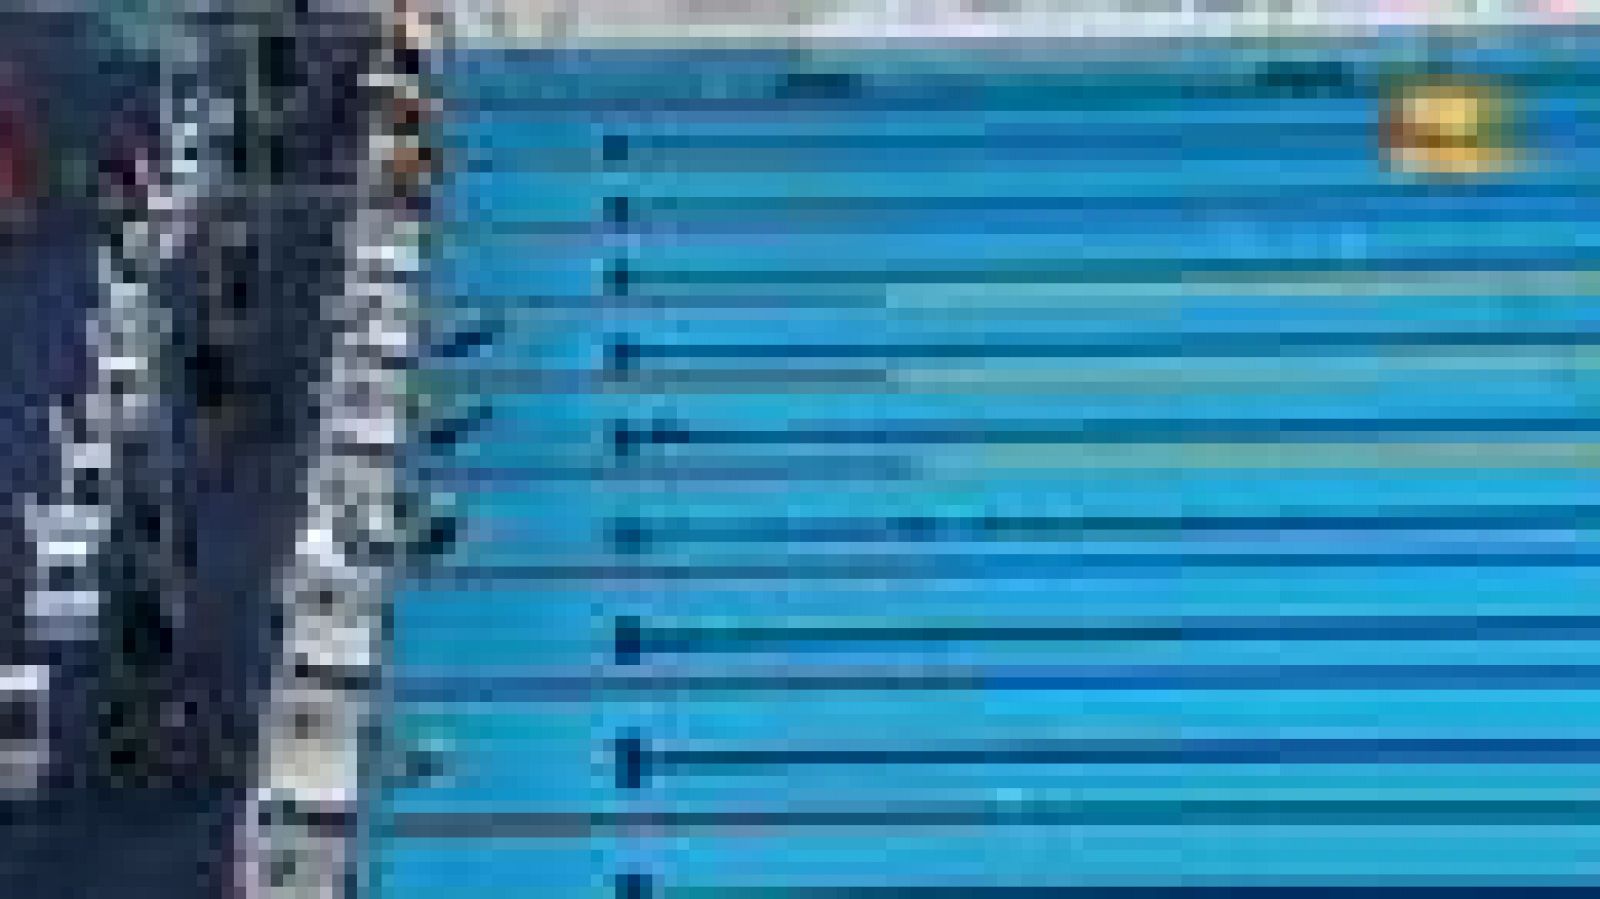 La nadadora española finaliza tercera en los 100 metros braza SB4 de los Juegos Paralímpicos de Londres 2012 y amplía su histórica colección de medallas.